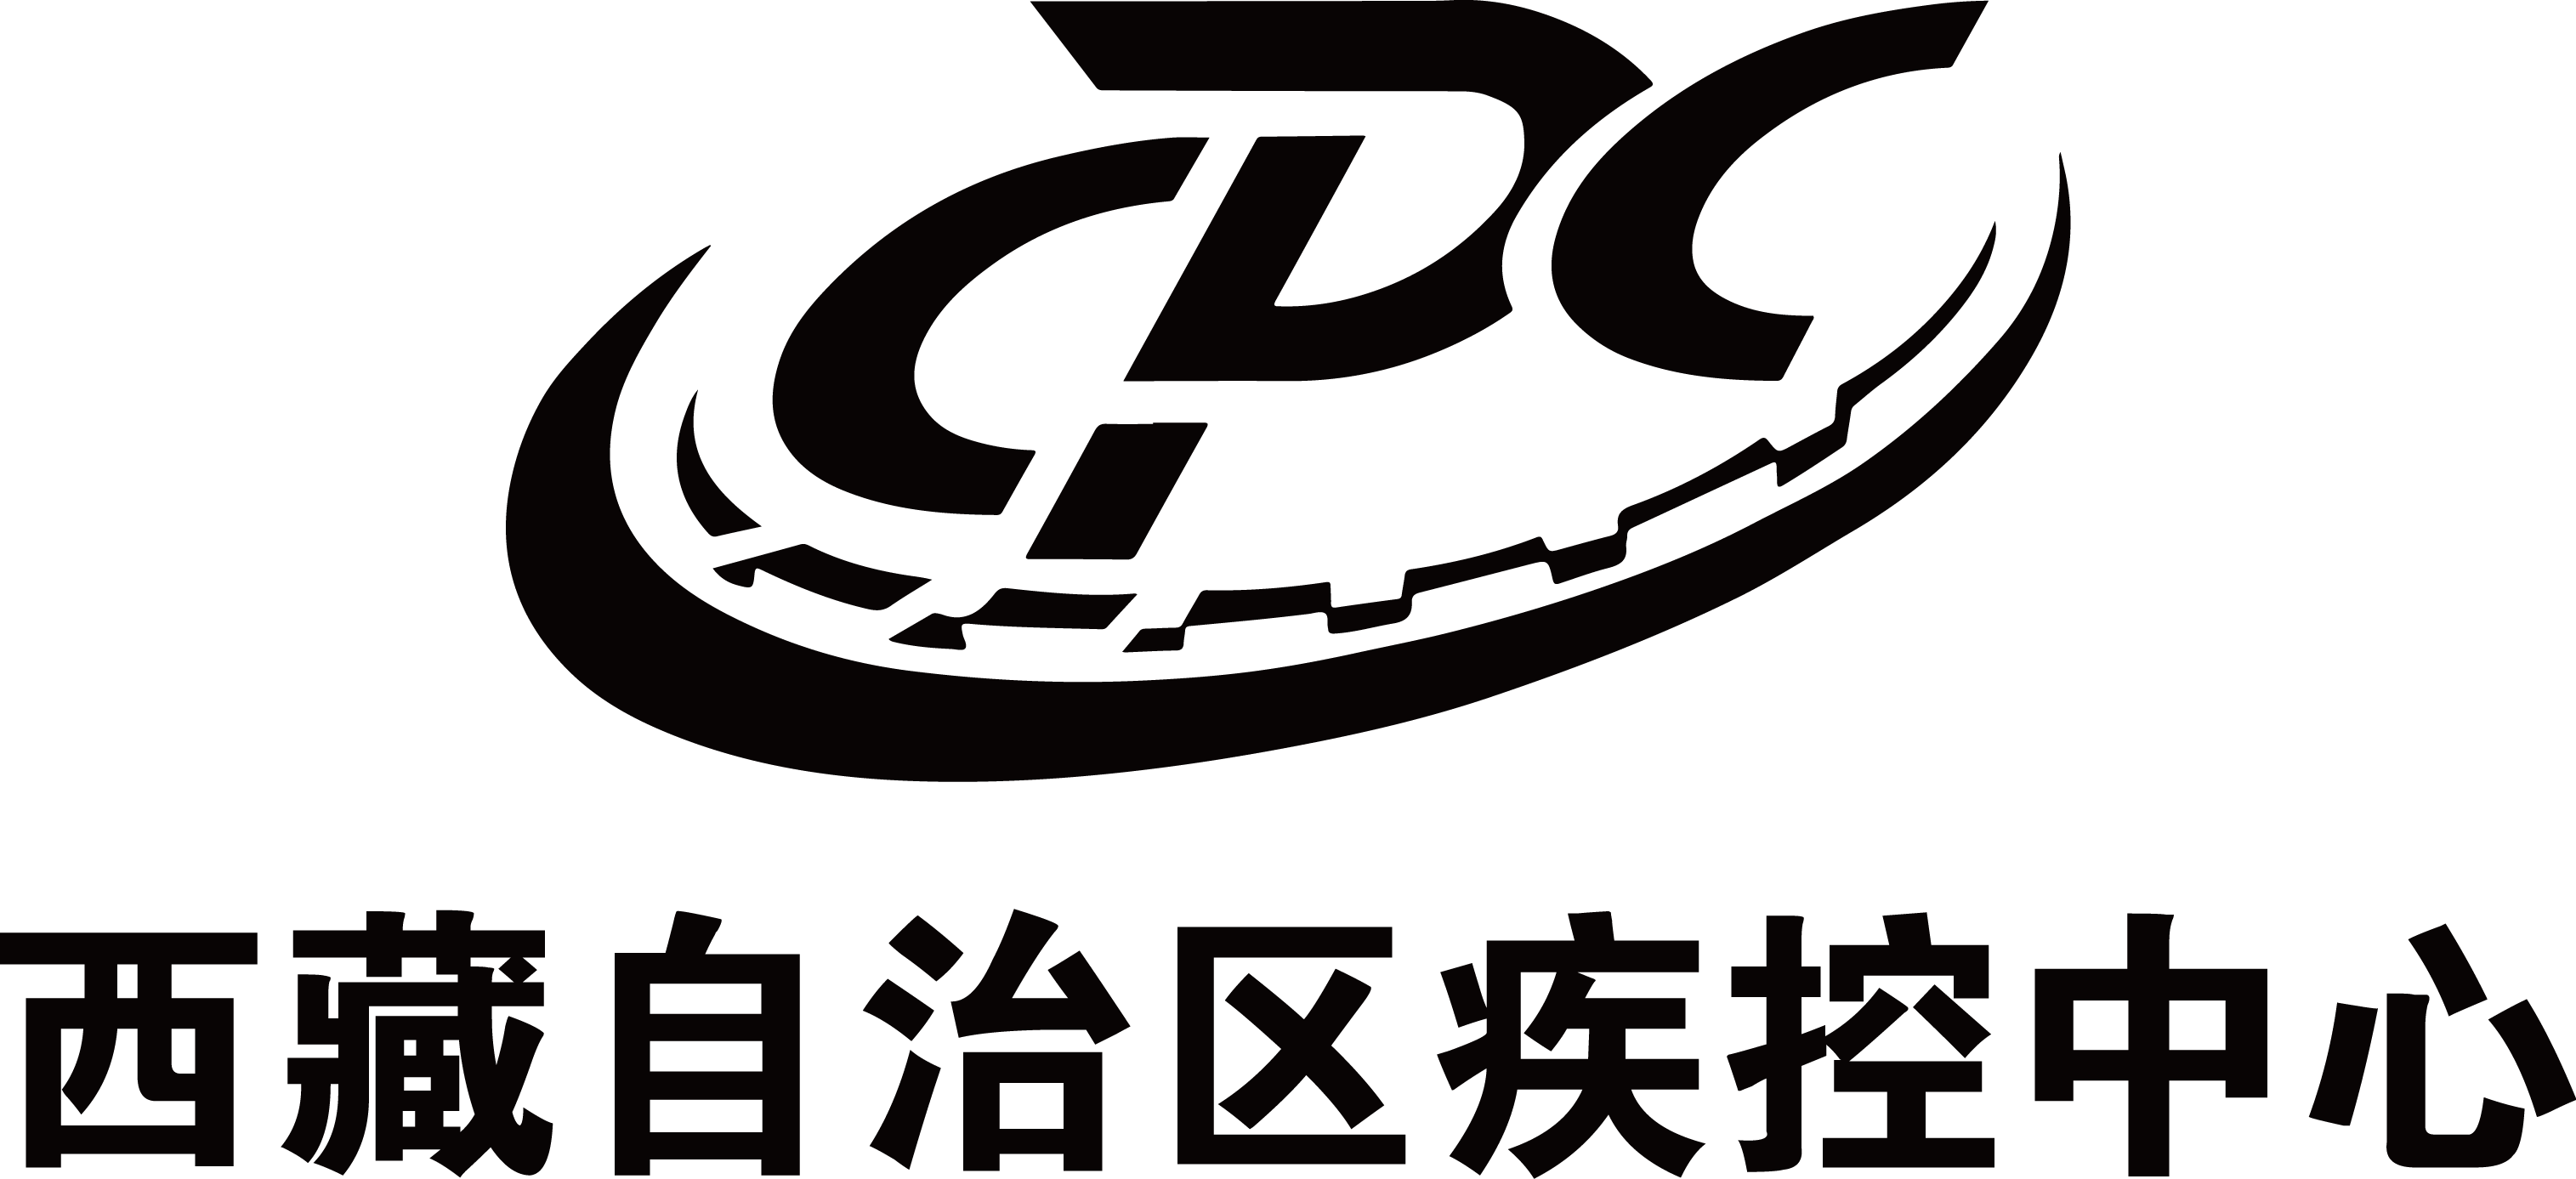 本子logo.png